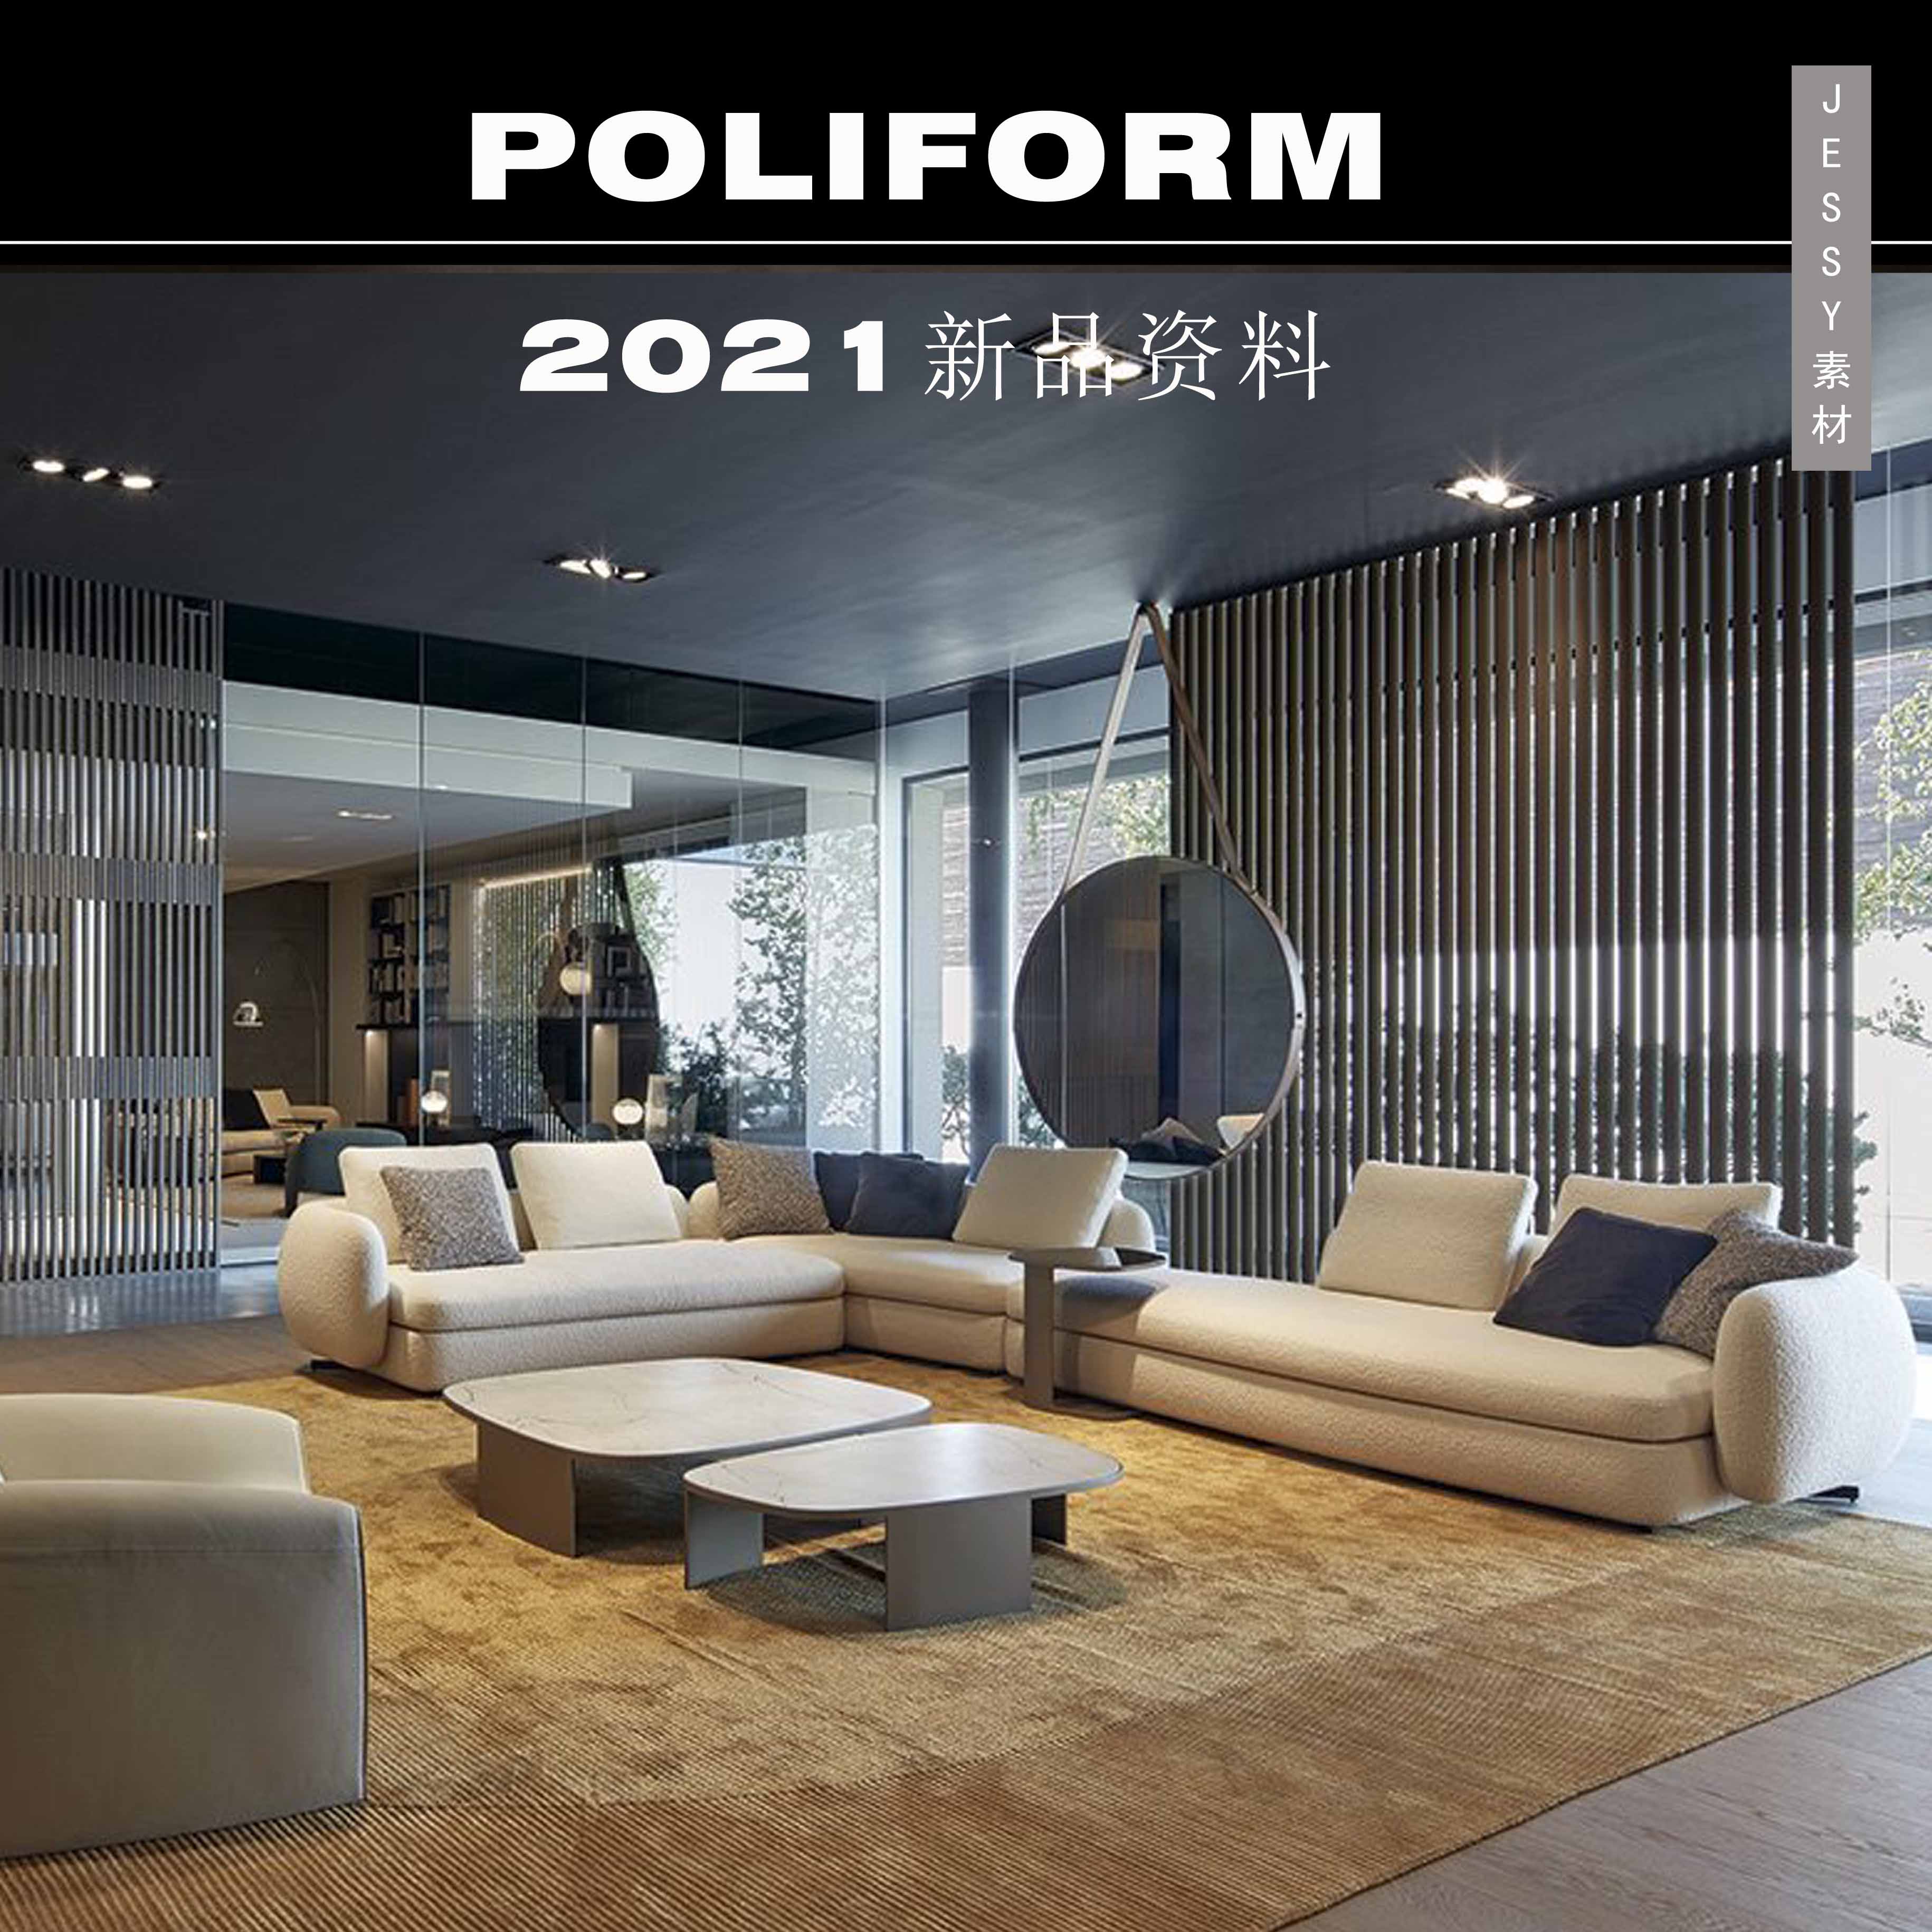 意大利Poliform2021新品资料现代家具素材设计图片带尺寸参考资料